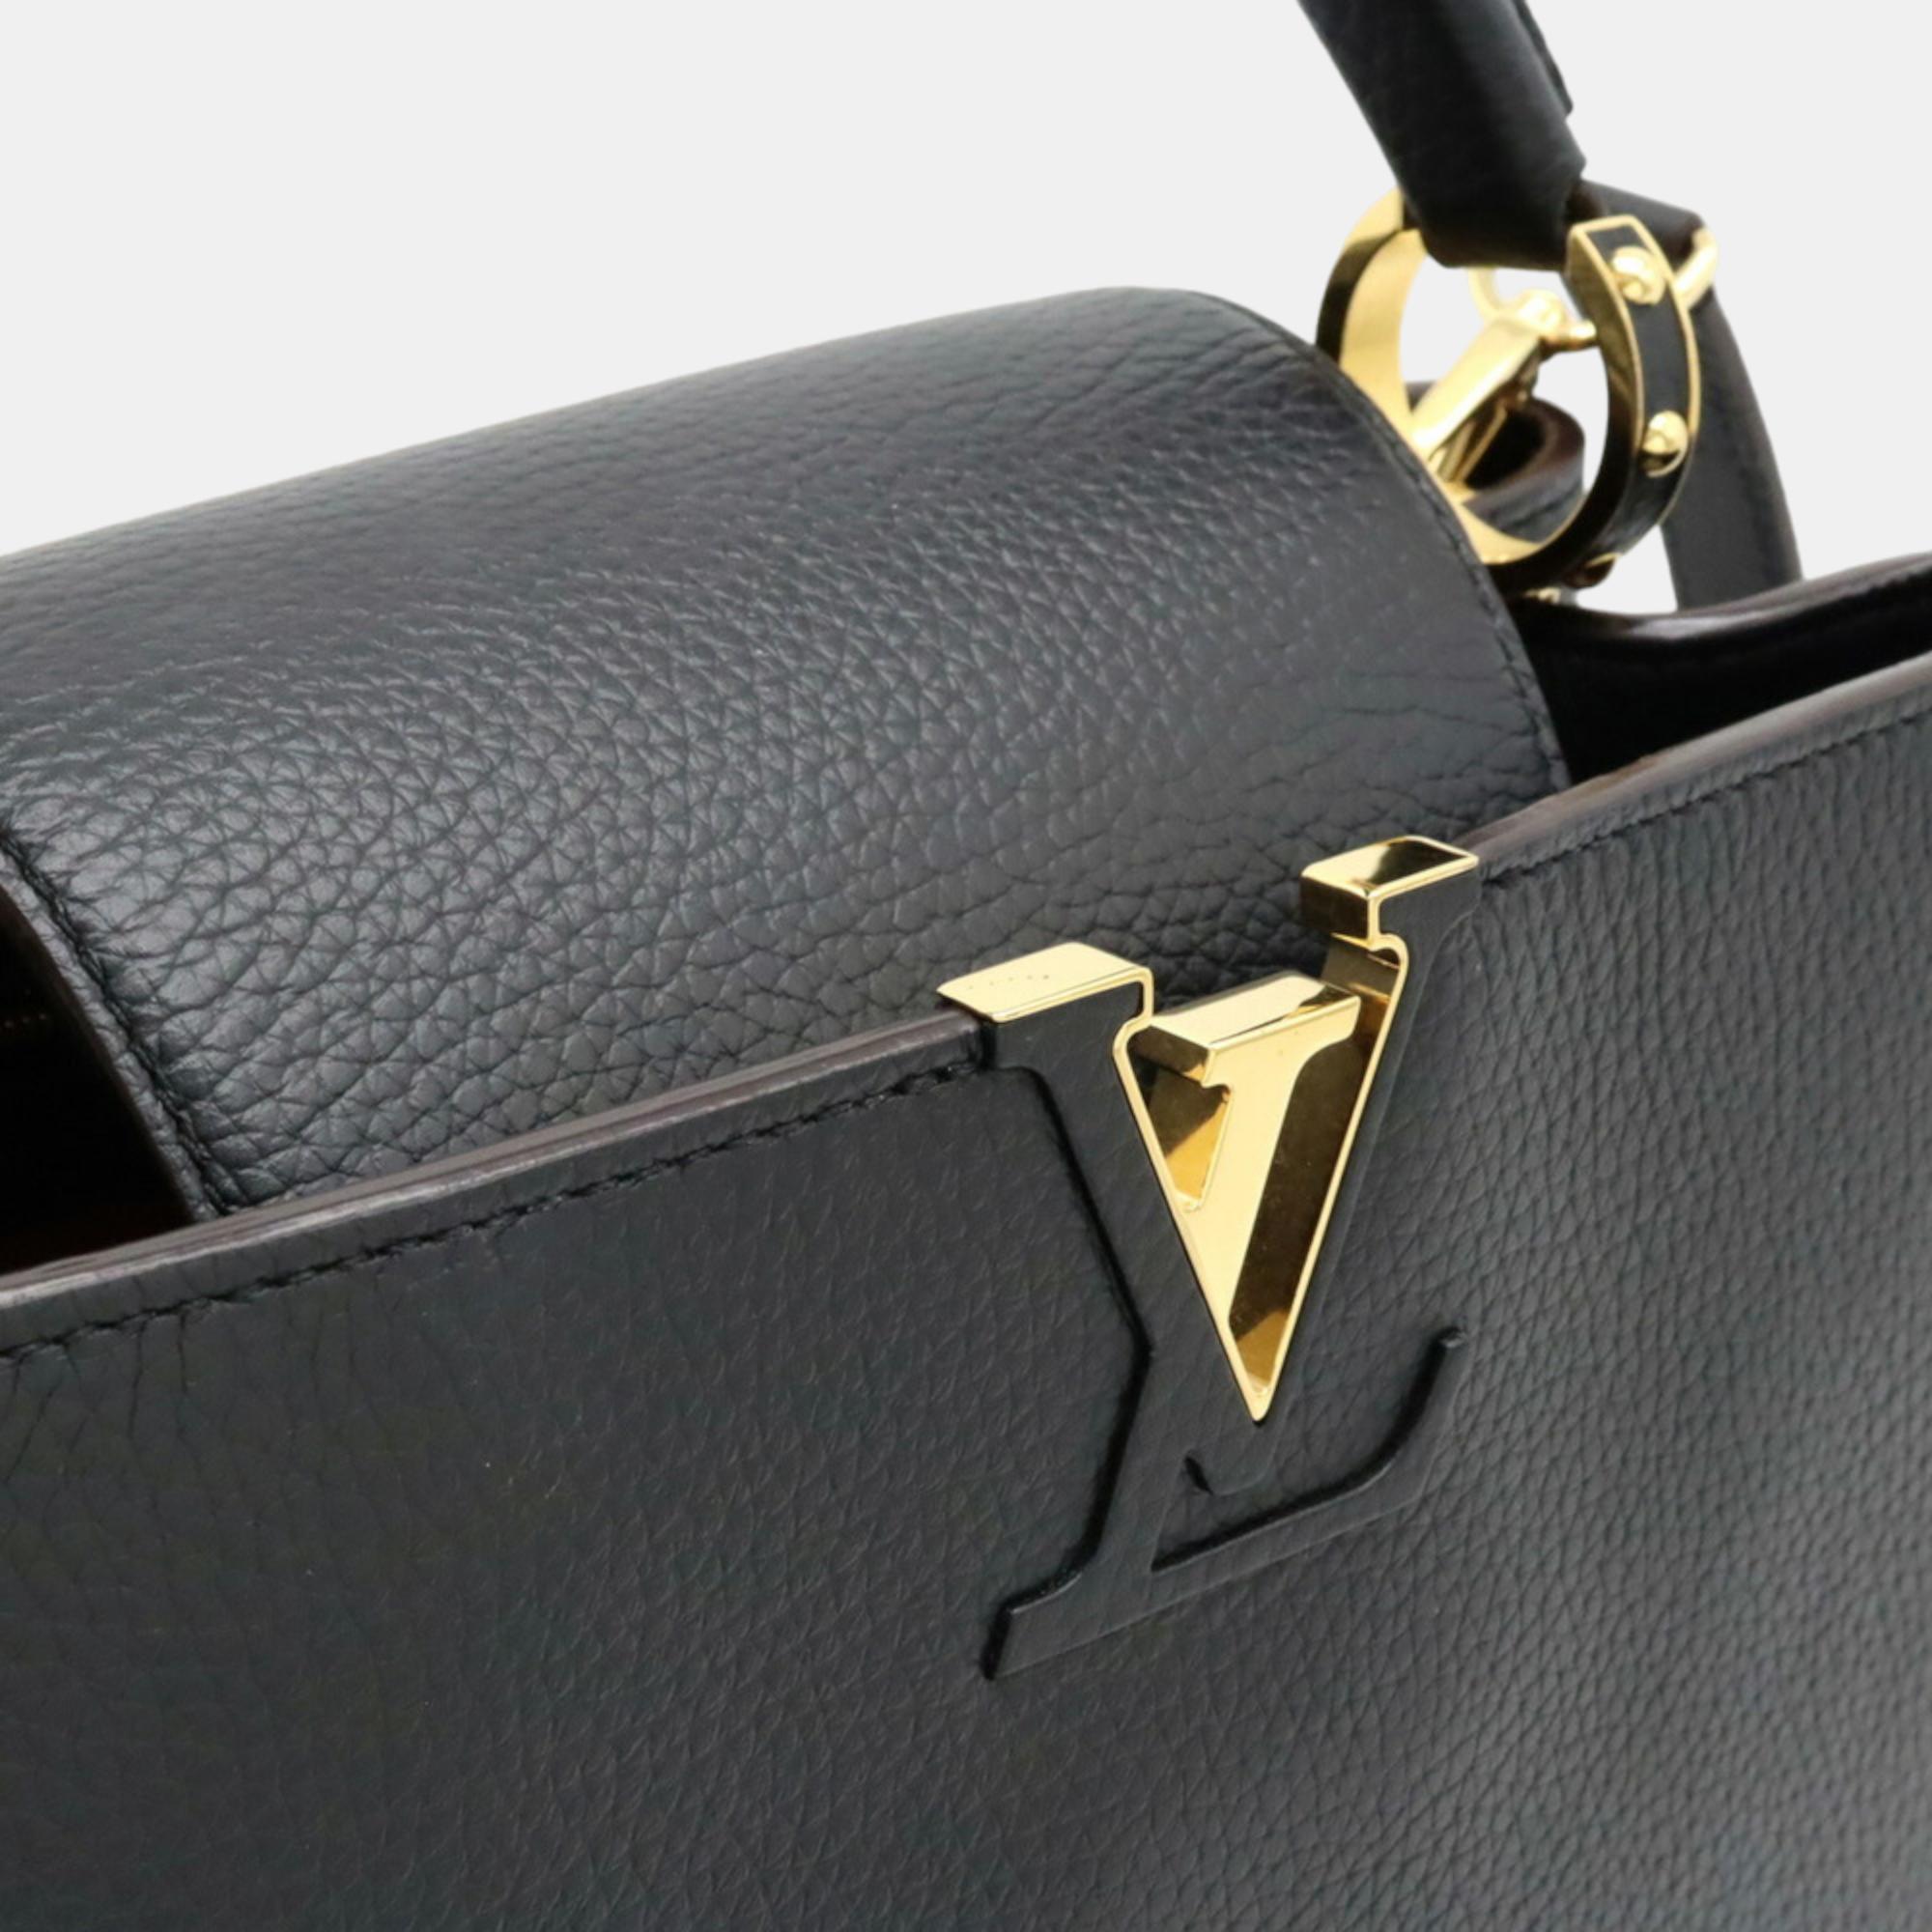 Louis Vuitton Black Taurillon Leather Capucines MM Top Handle Bag